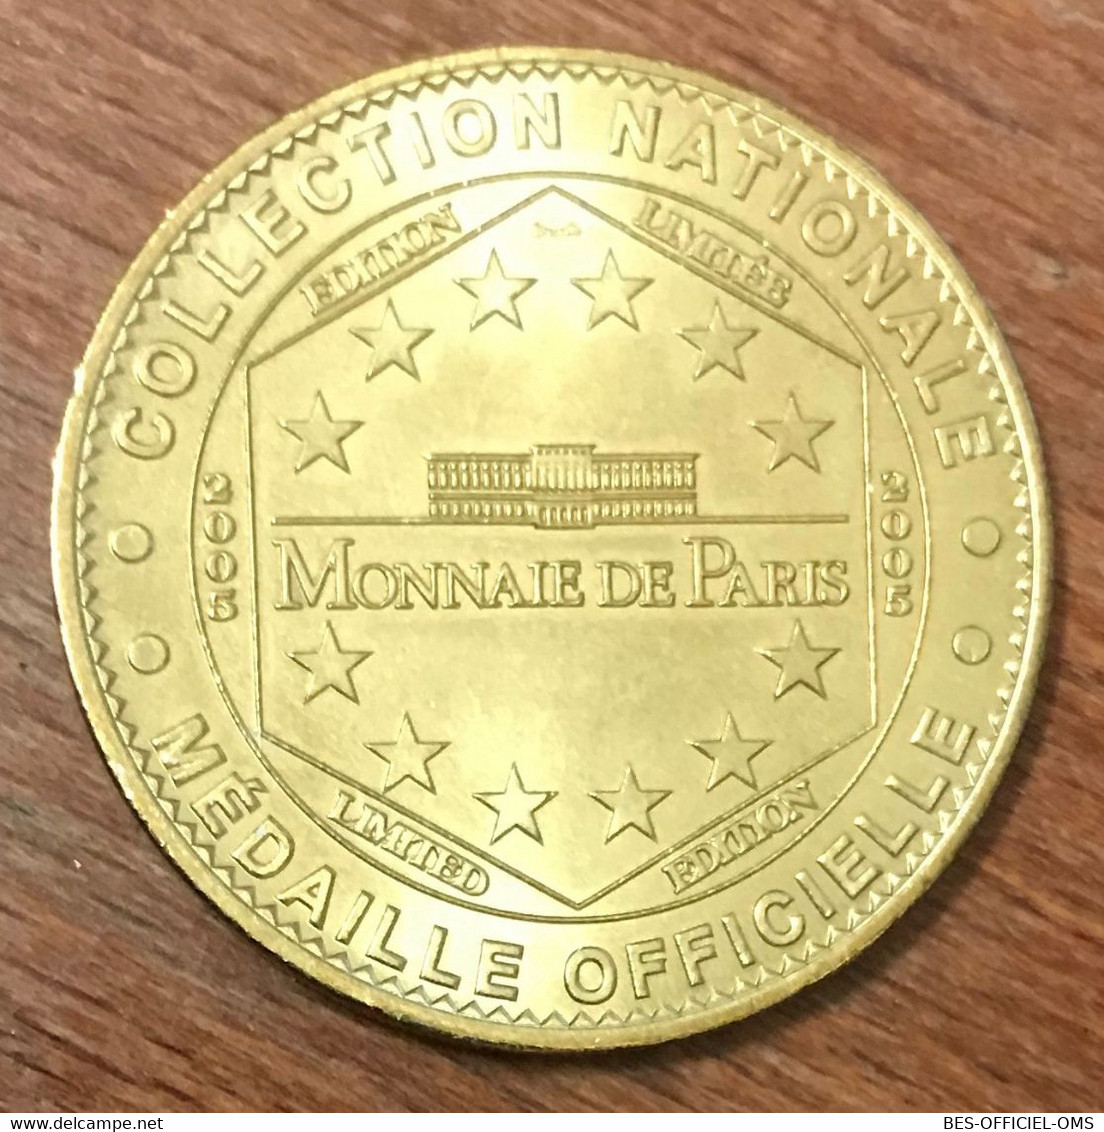 24 PÉRIGUEUX VESUNNA HOMME  MDP 2005 MEDAILLE SOUVENIR MONNAIE DE PARIS JETON TOURISTIQUE MEDALS COINS TOKENS - 2005